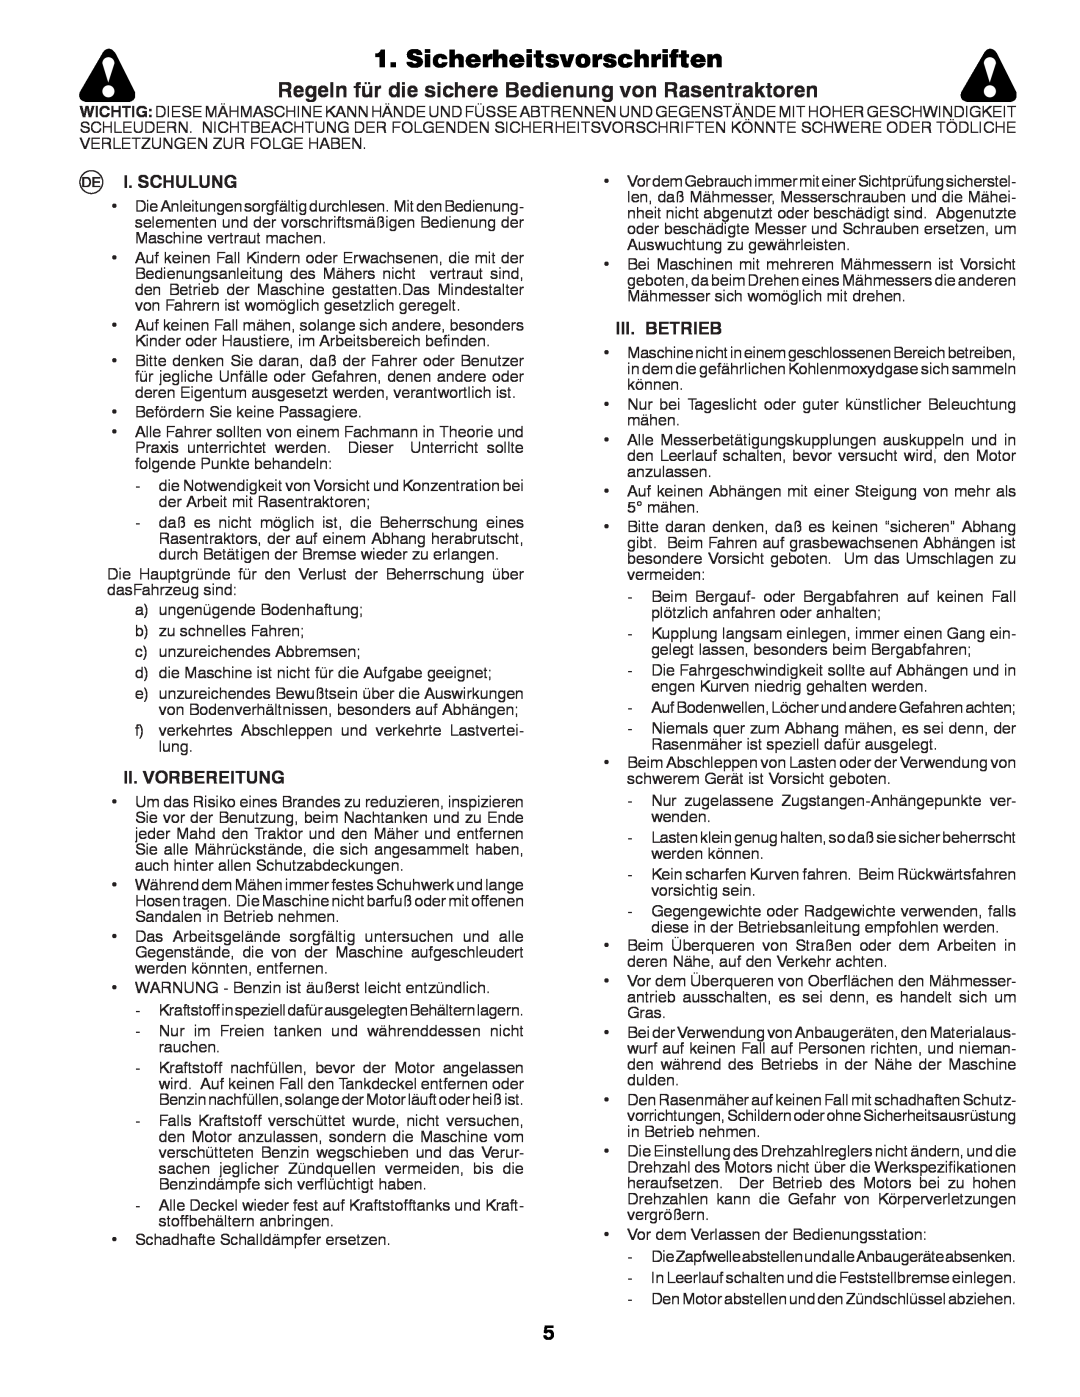 Husqvarna LT131 Sicherheitsvorschriften, Regeln für die sichere Bedienung von Rasentraktoren, I. Schulung, Iii. Betrieb 